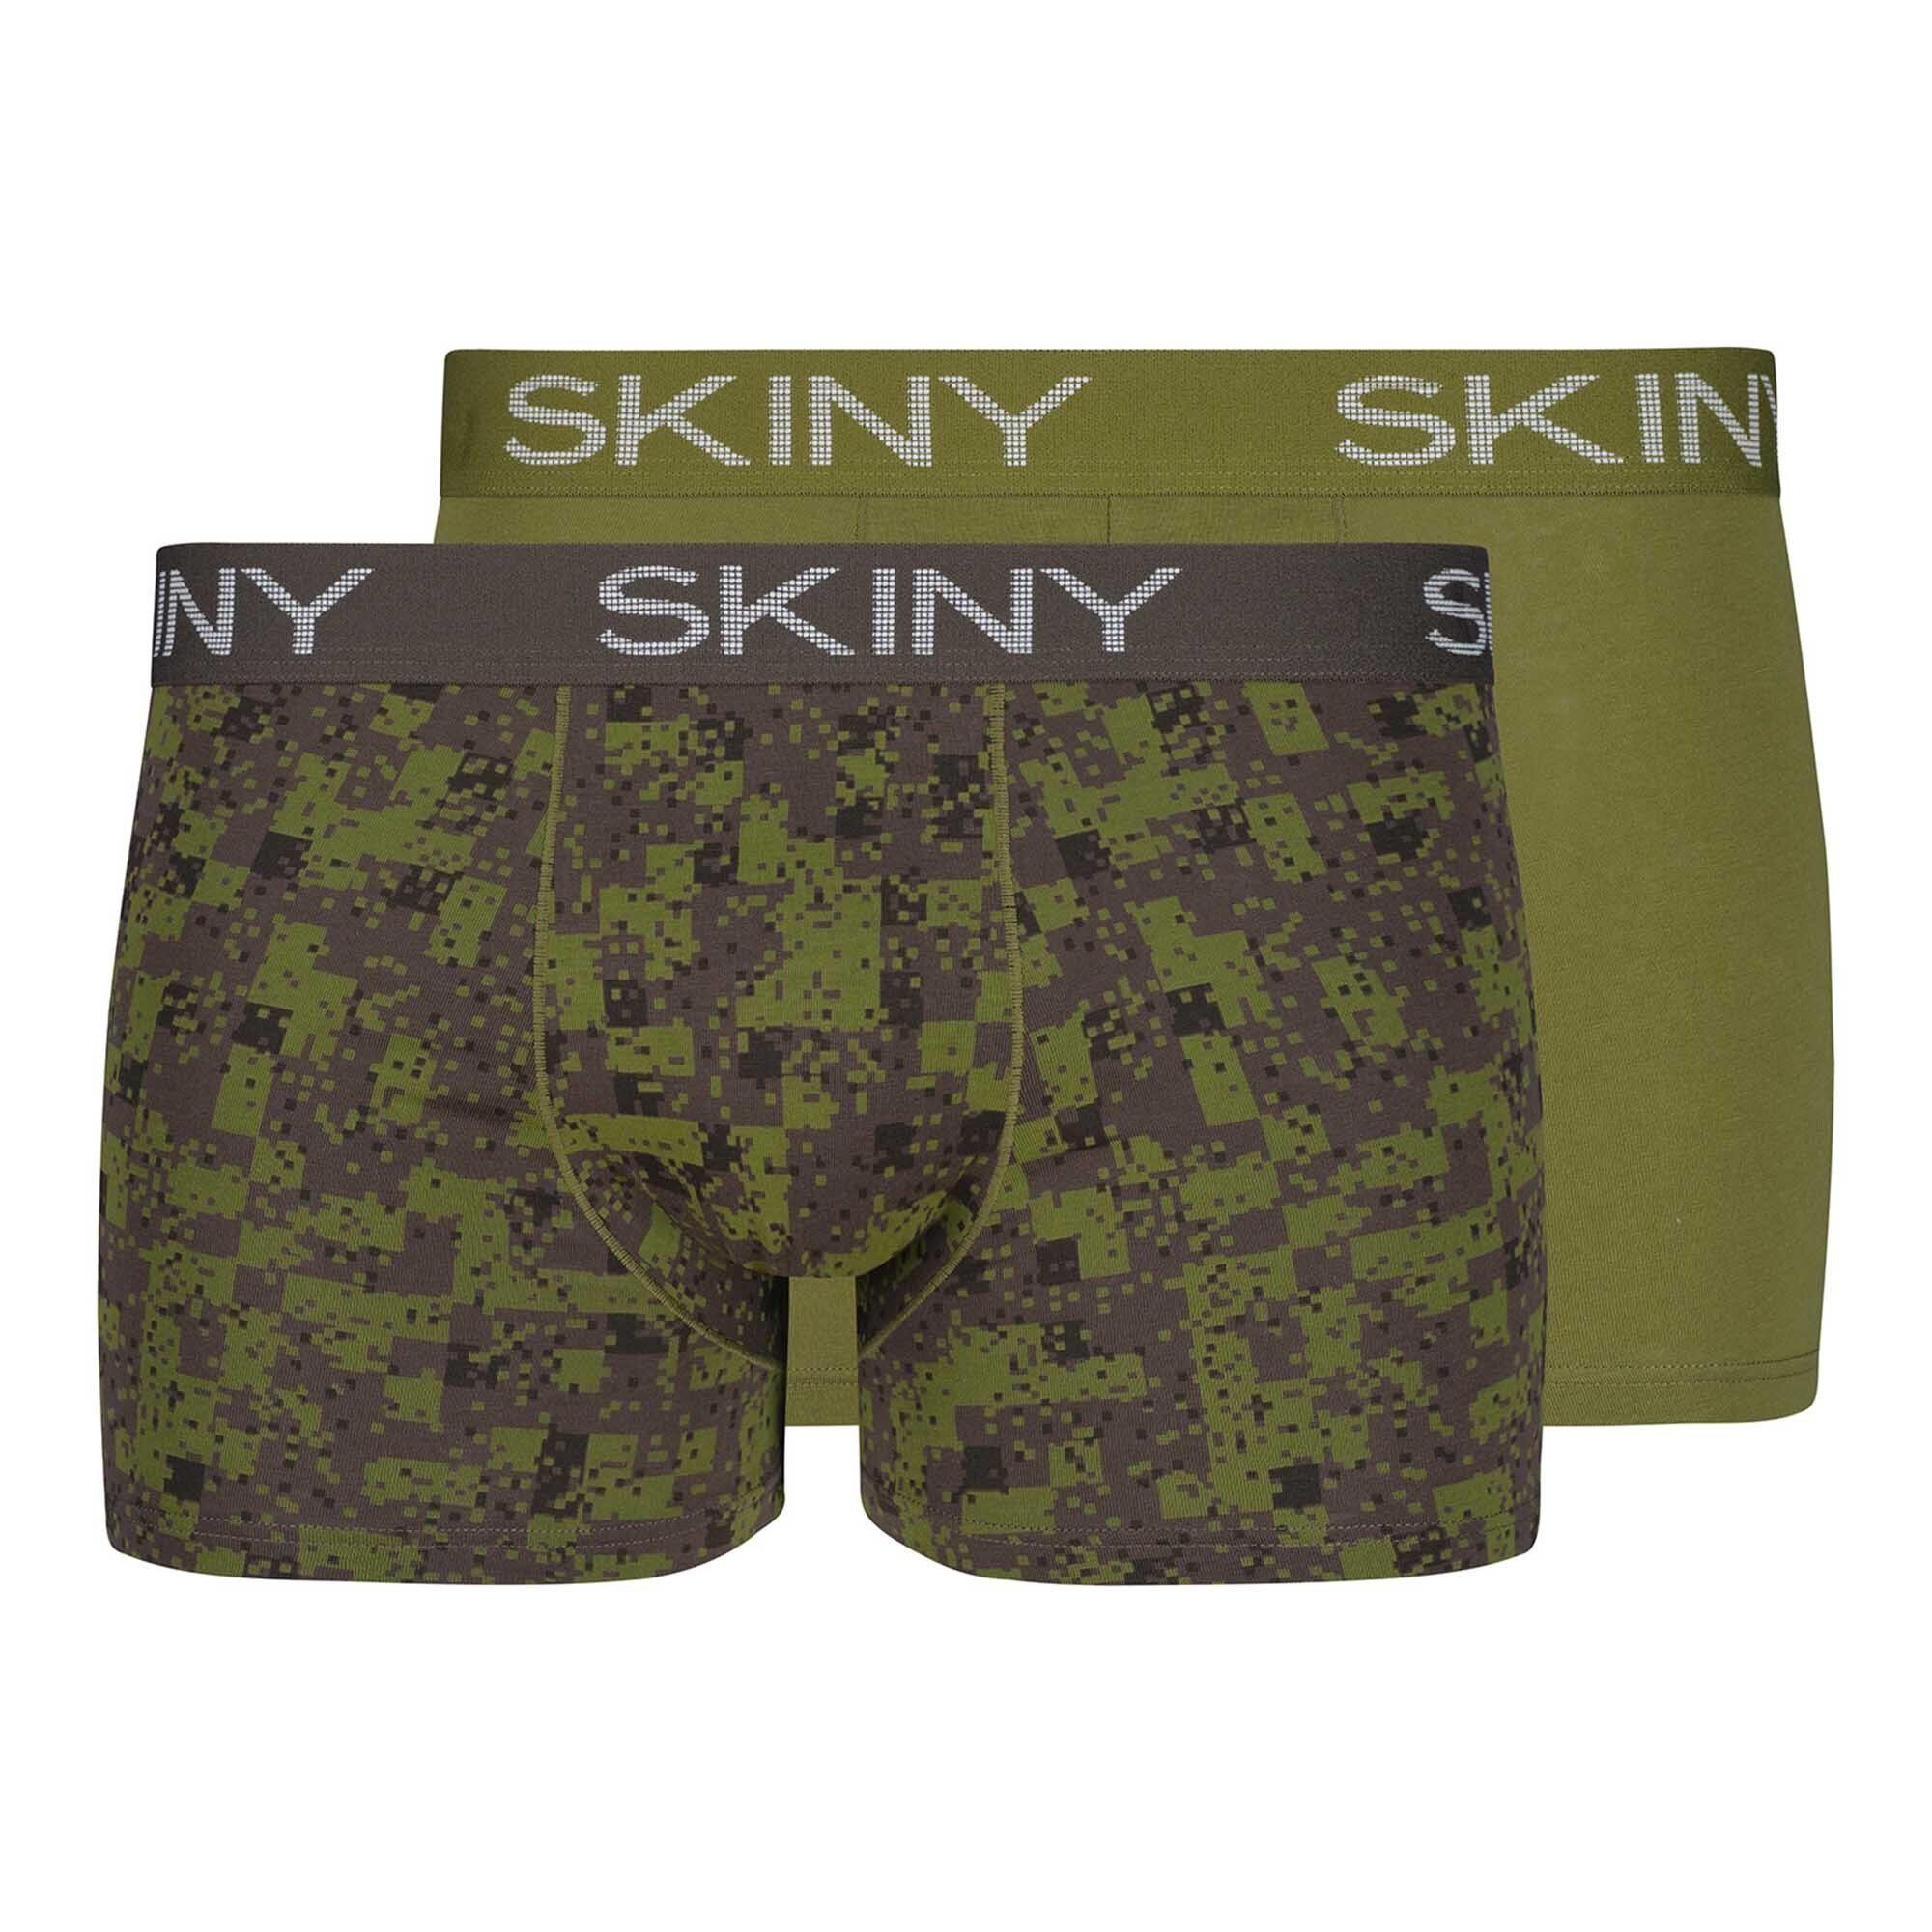 Boxer Pants - Trunks, Skiny Grün Pack Herren 2er Boxer Short,